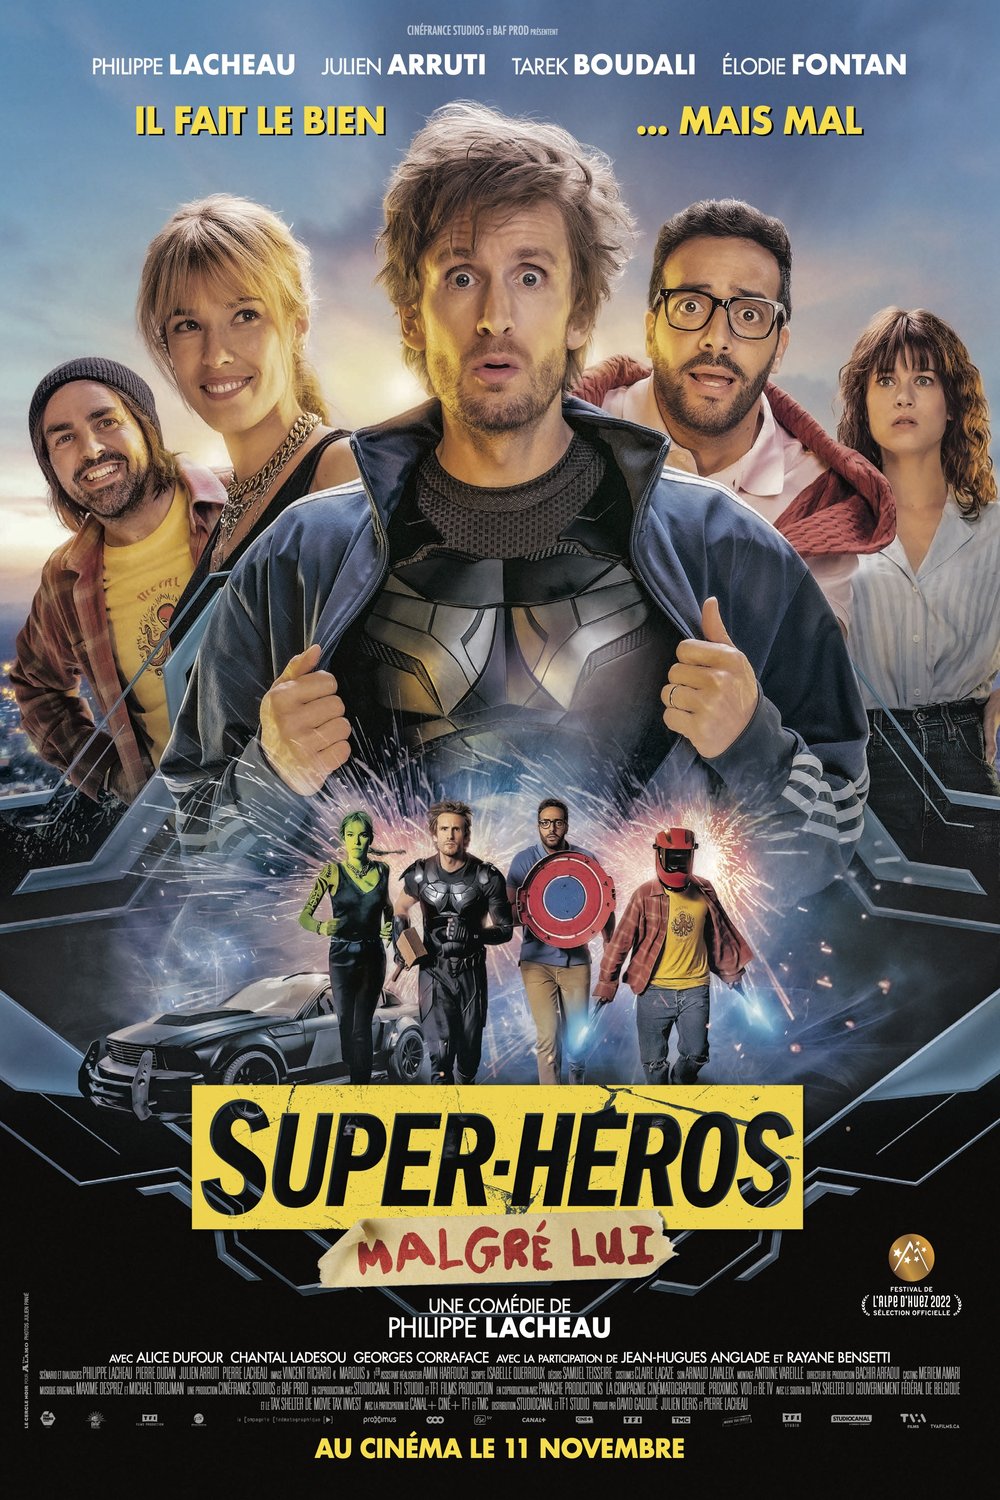 L'affiche du film Super-héros malgré lui